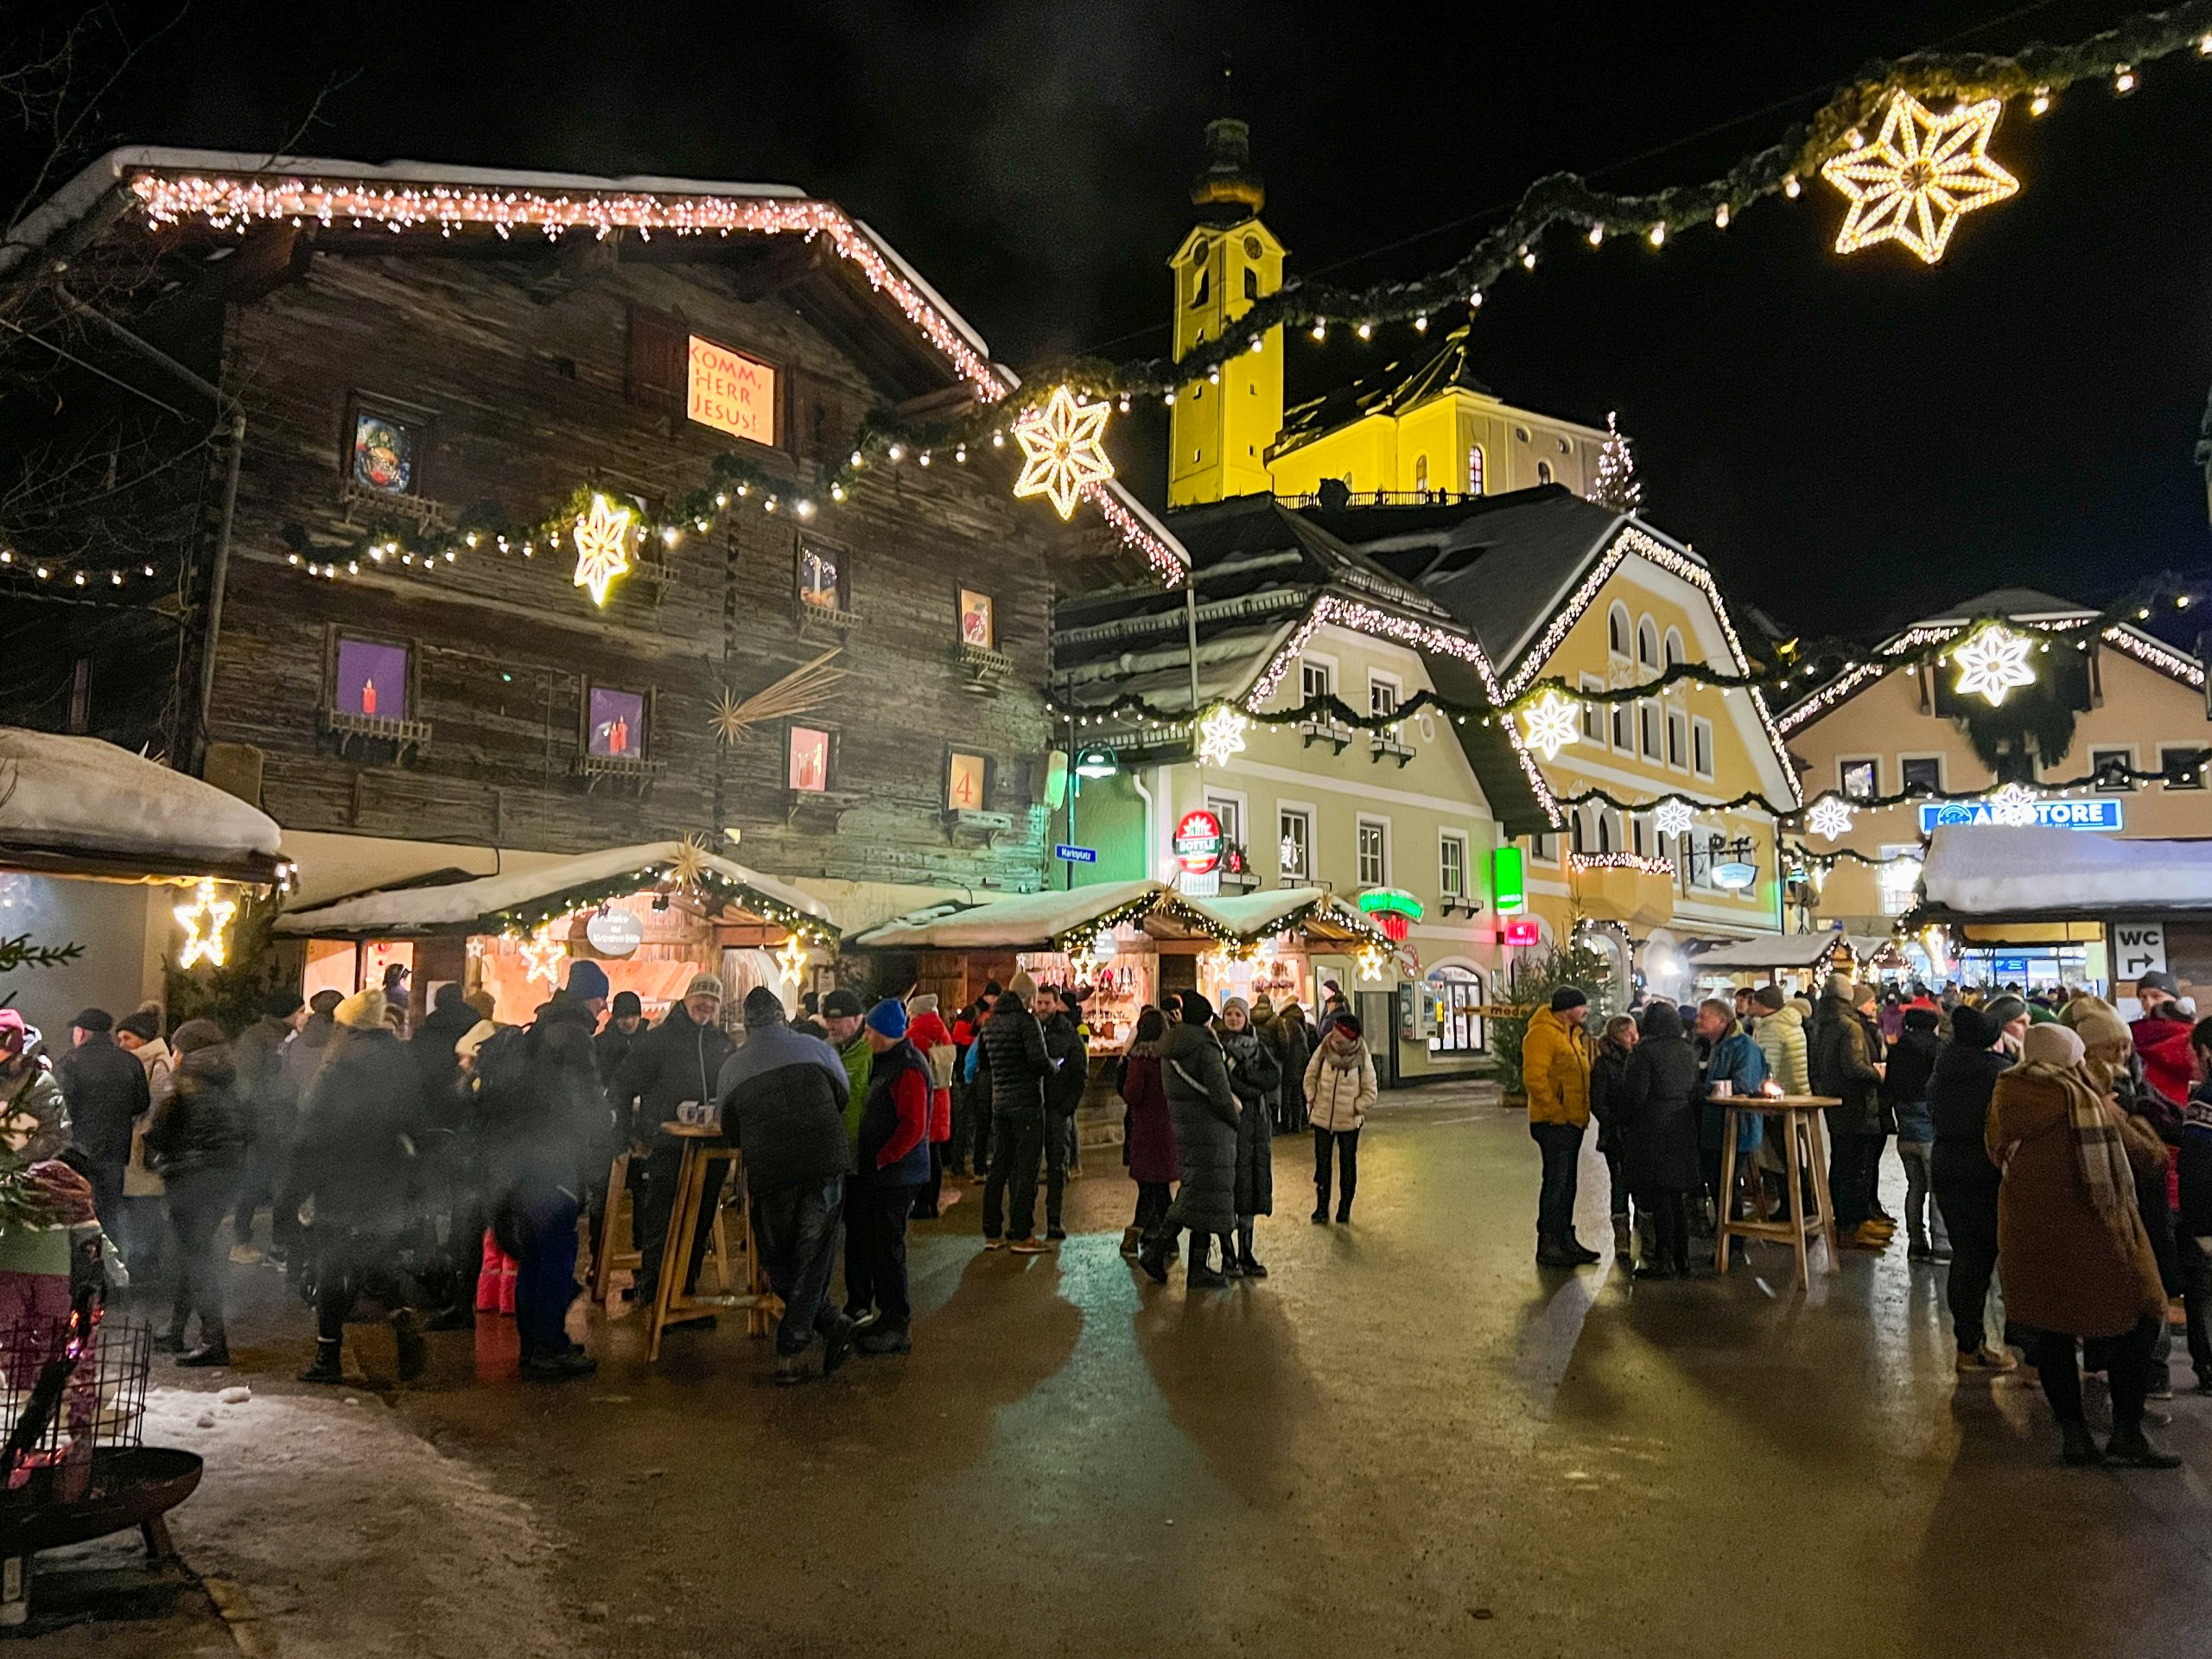 De knusse kerstmarkt in het centrum